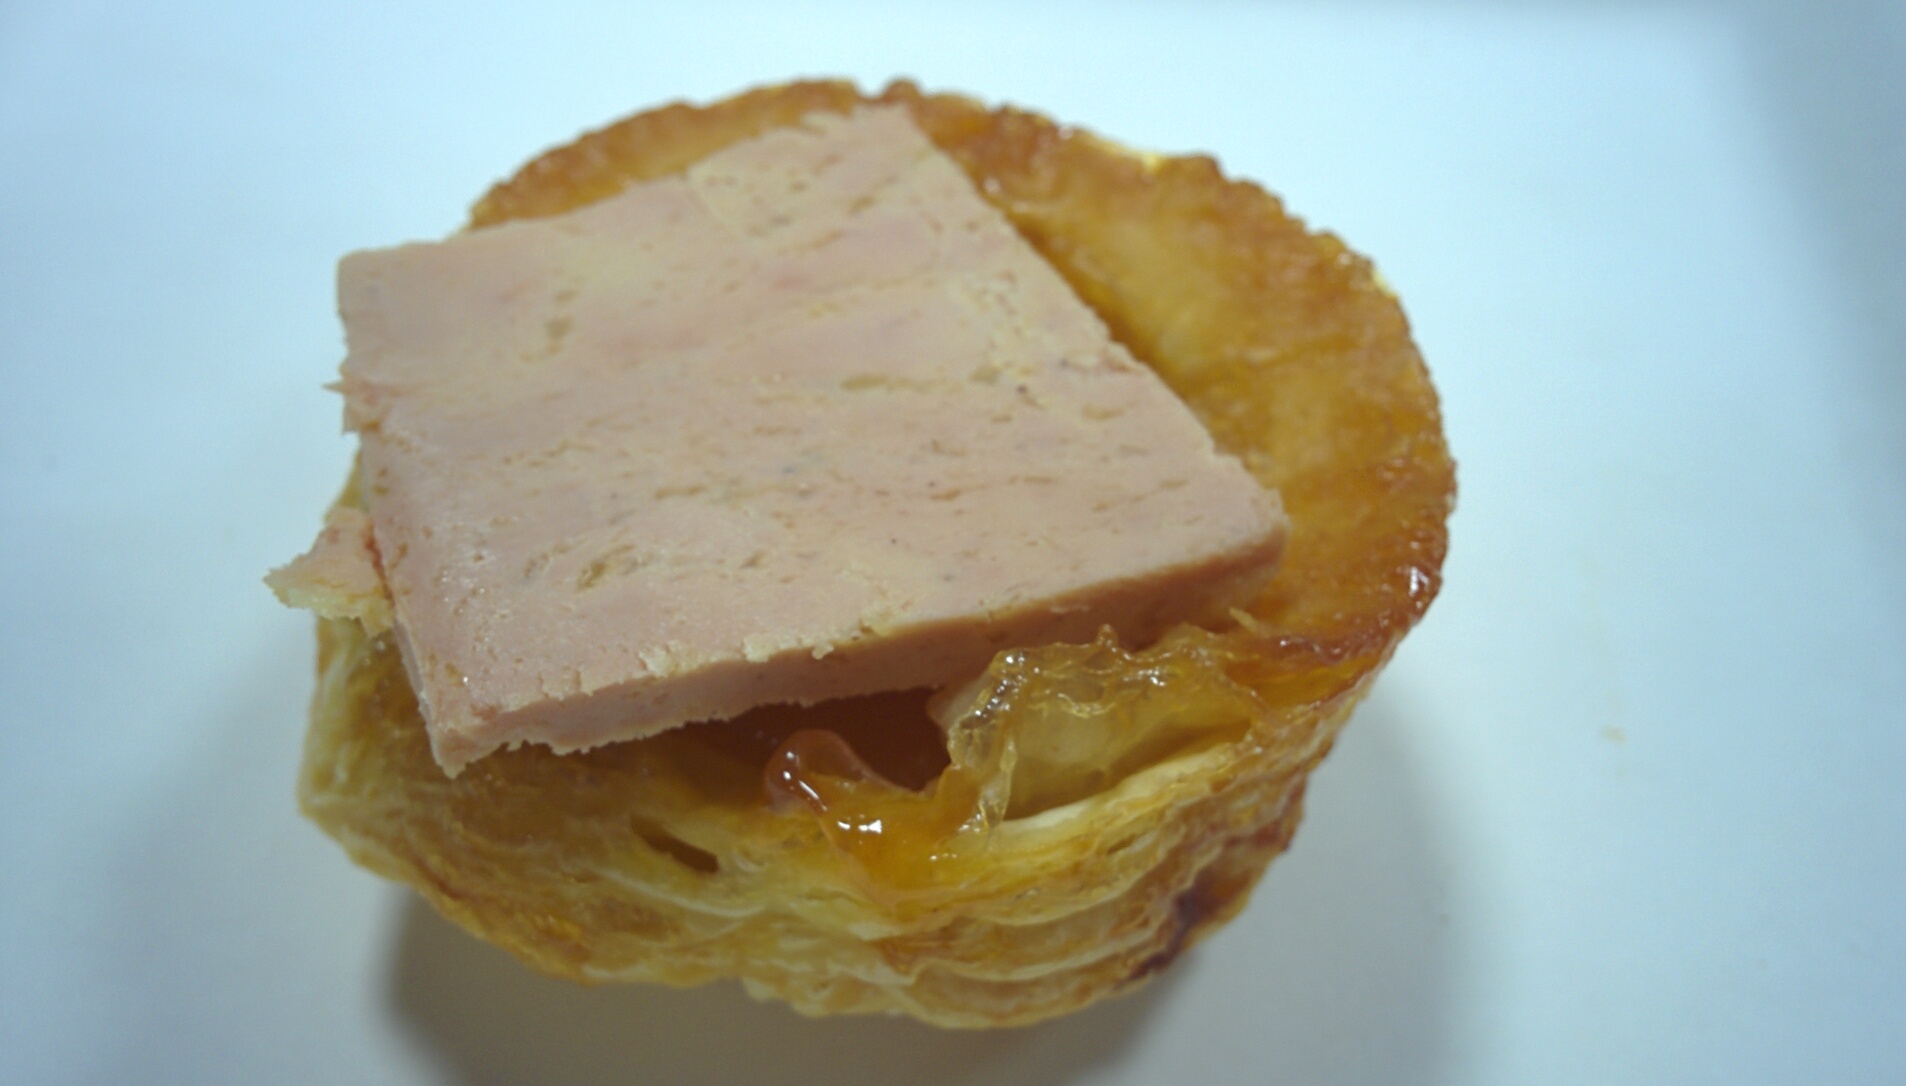 Tatin de foie gras